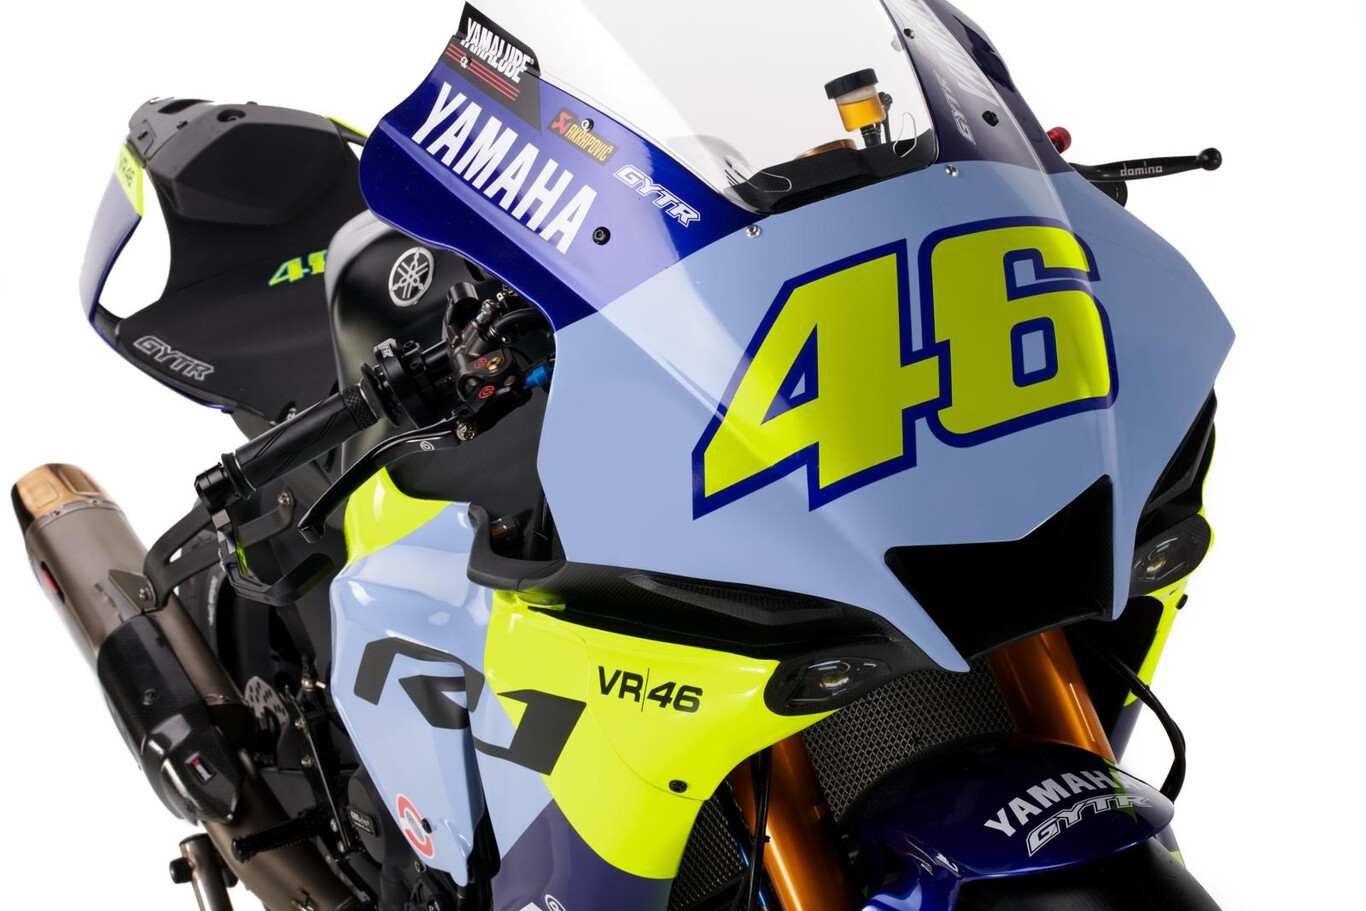 Yamaha YZR-R1 phiên bản đặc biệt vinh danh tay đua Valentino Rossi 2022-Yamaha-YZF-R1-GYTR-VR46-Tribute (1).jpeg